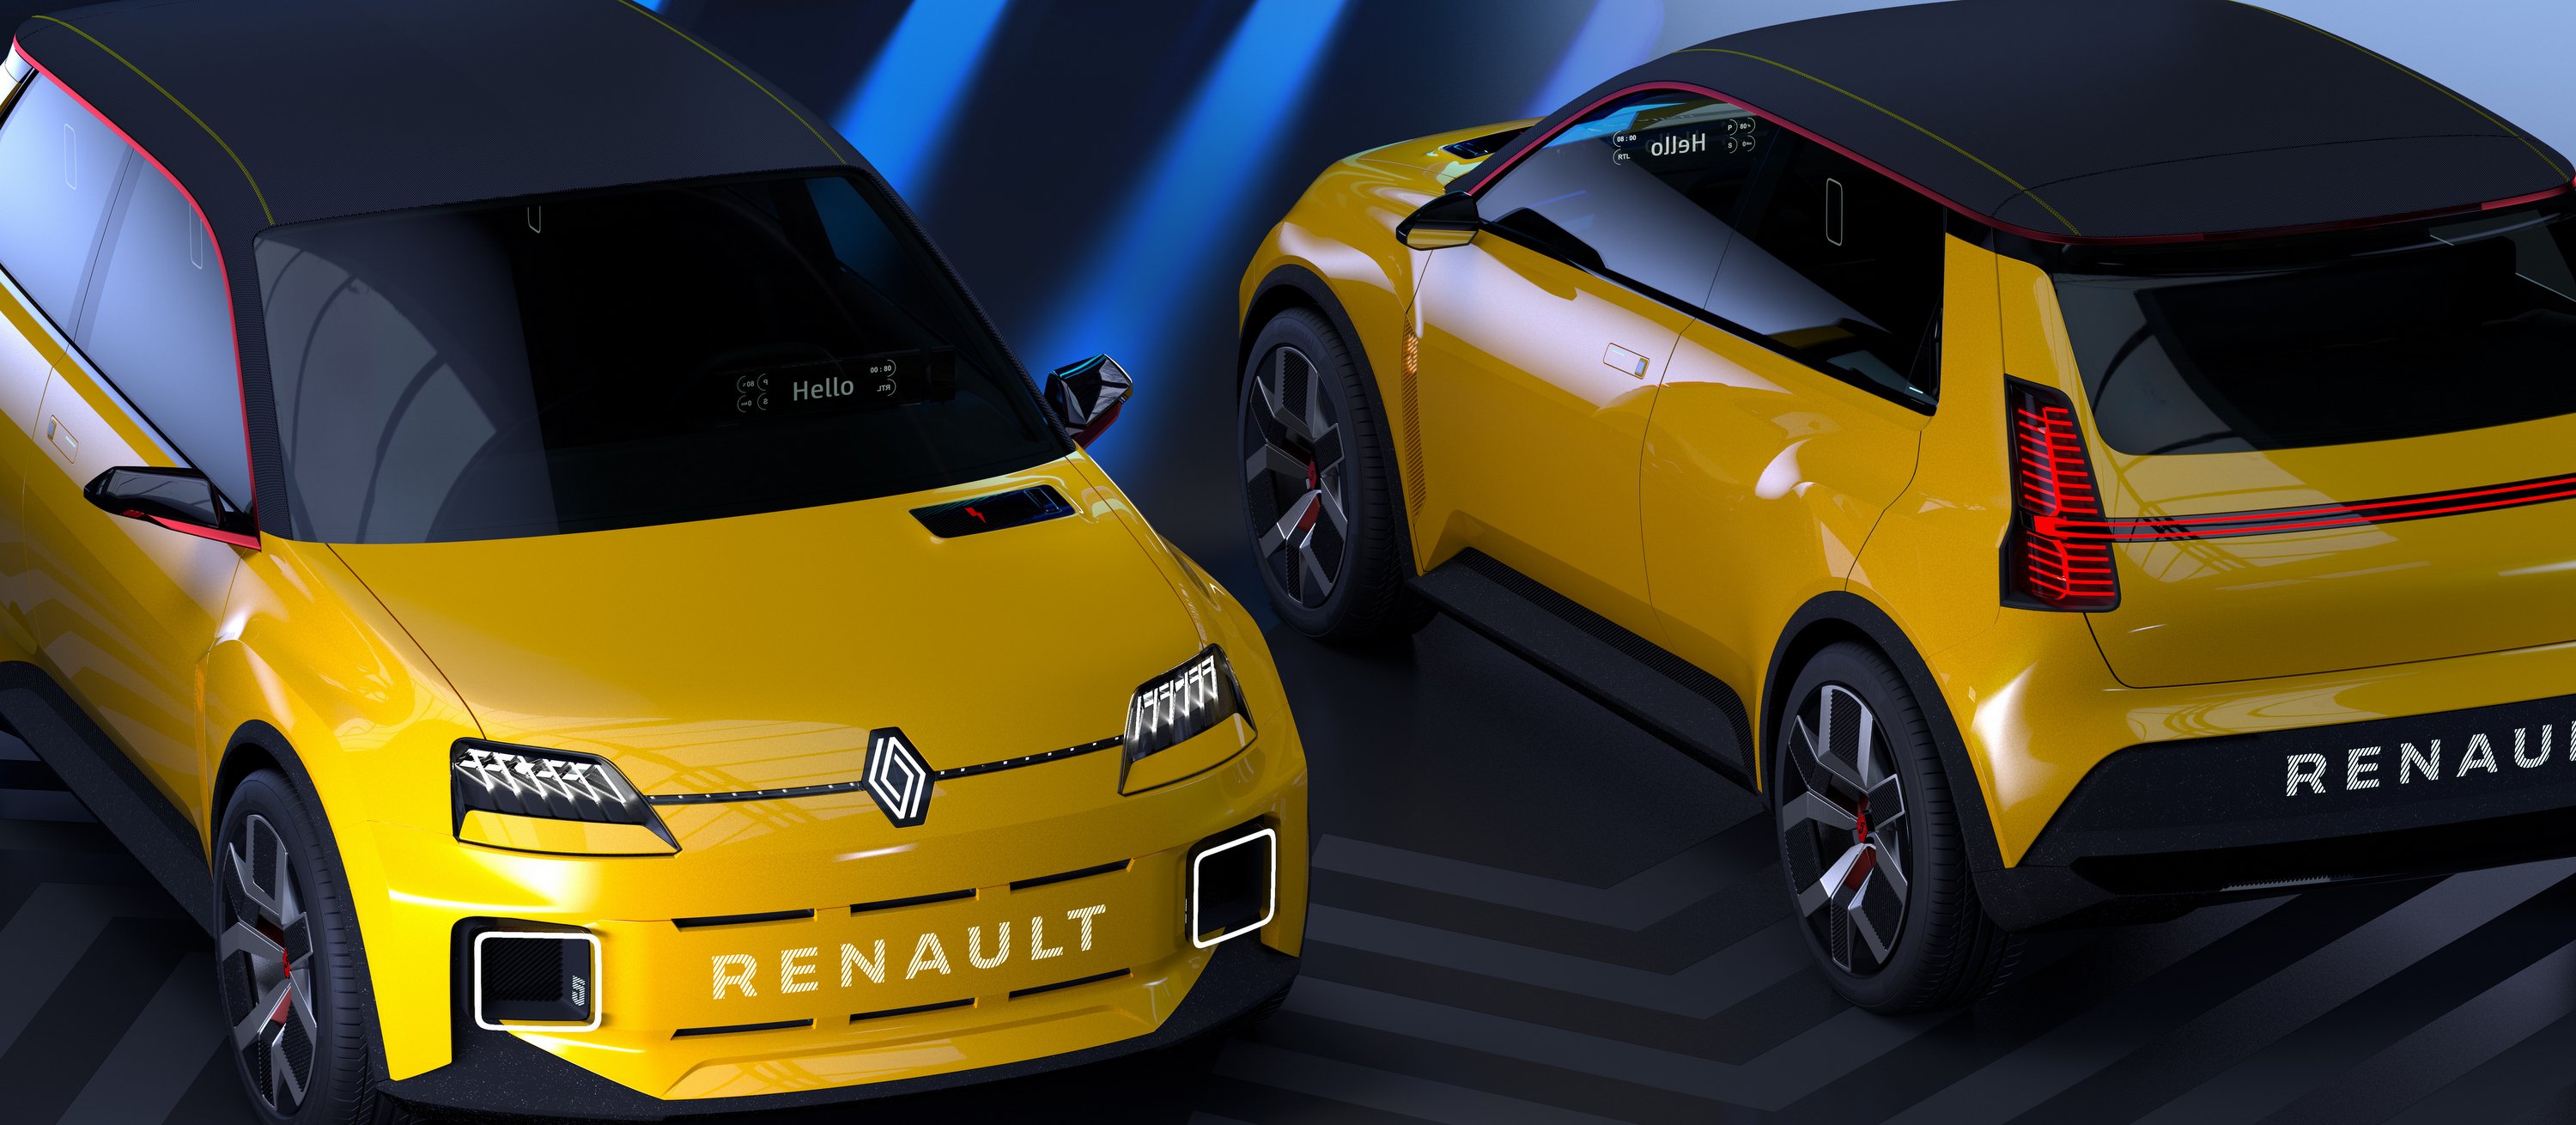 Így adna mindenkinek villanyautót a Renault 11